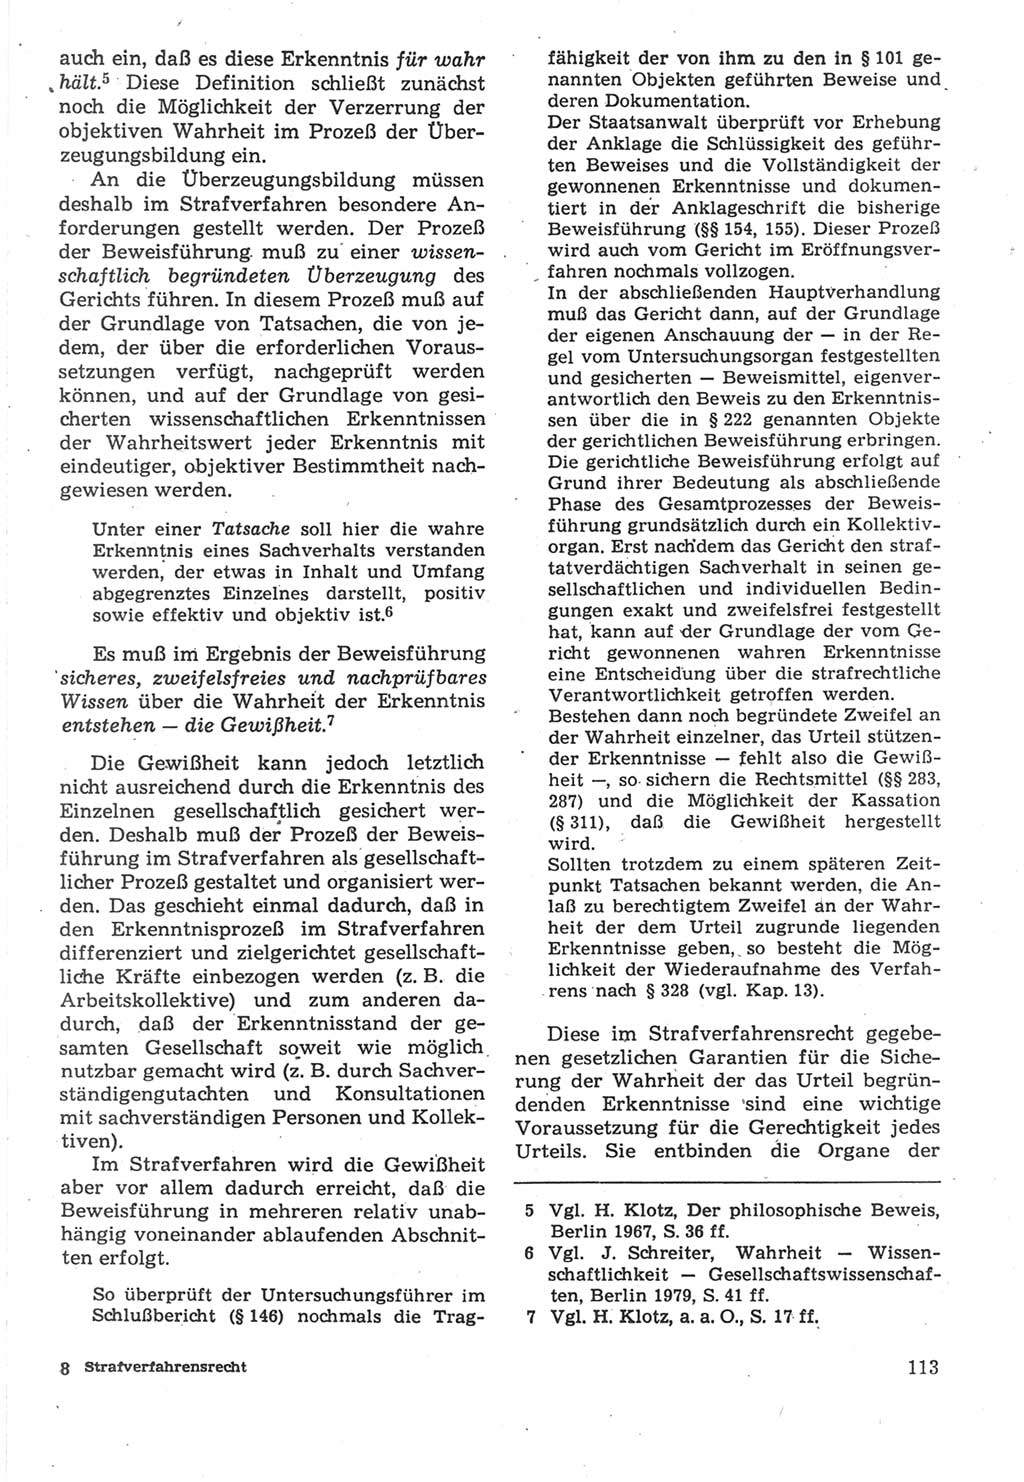 Strafverfahrensrecht [Deutsche Demokratische Republik (DDR)], Lehrbuch 1987, Seite 113 (Strafverf.-R. DDR Lb. 1987, S. 113)